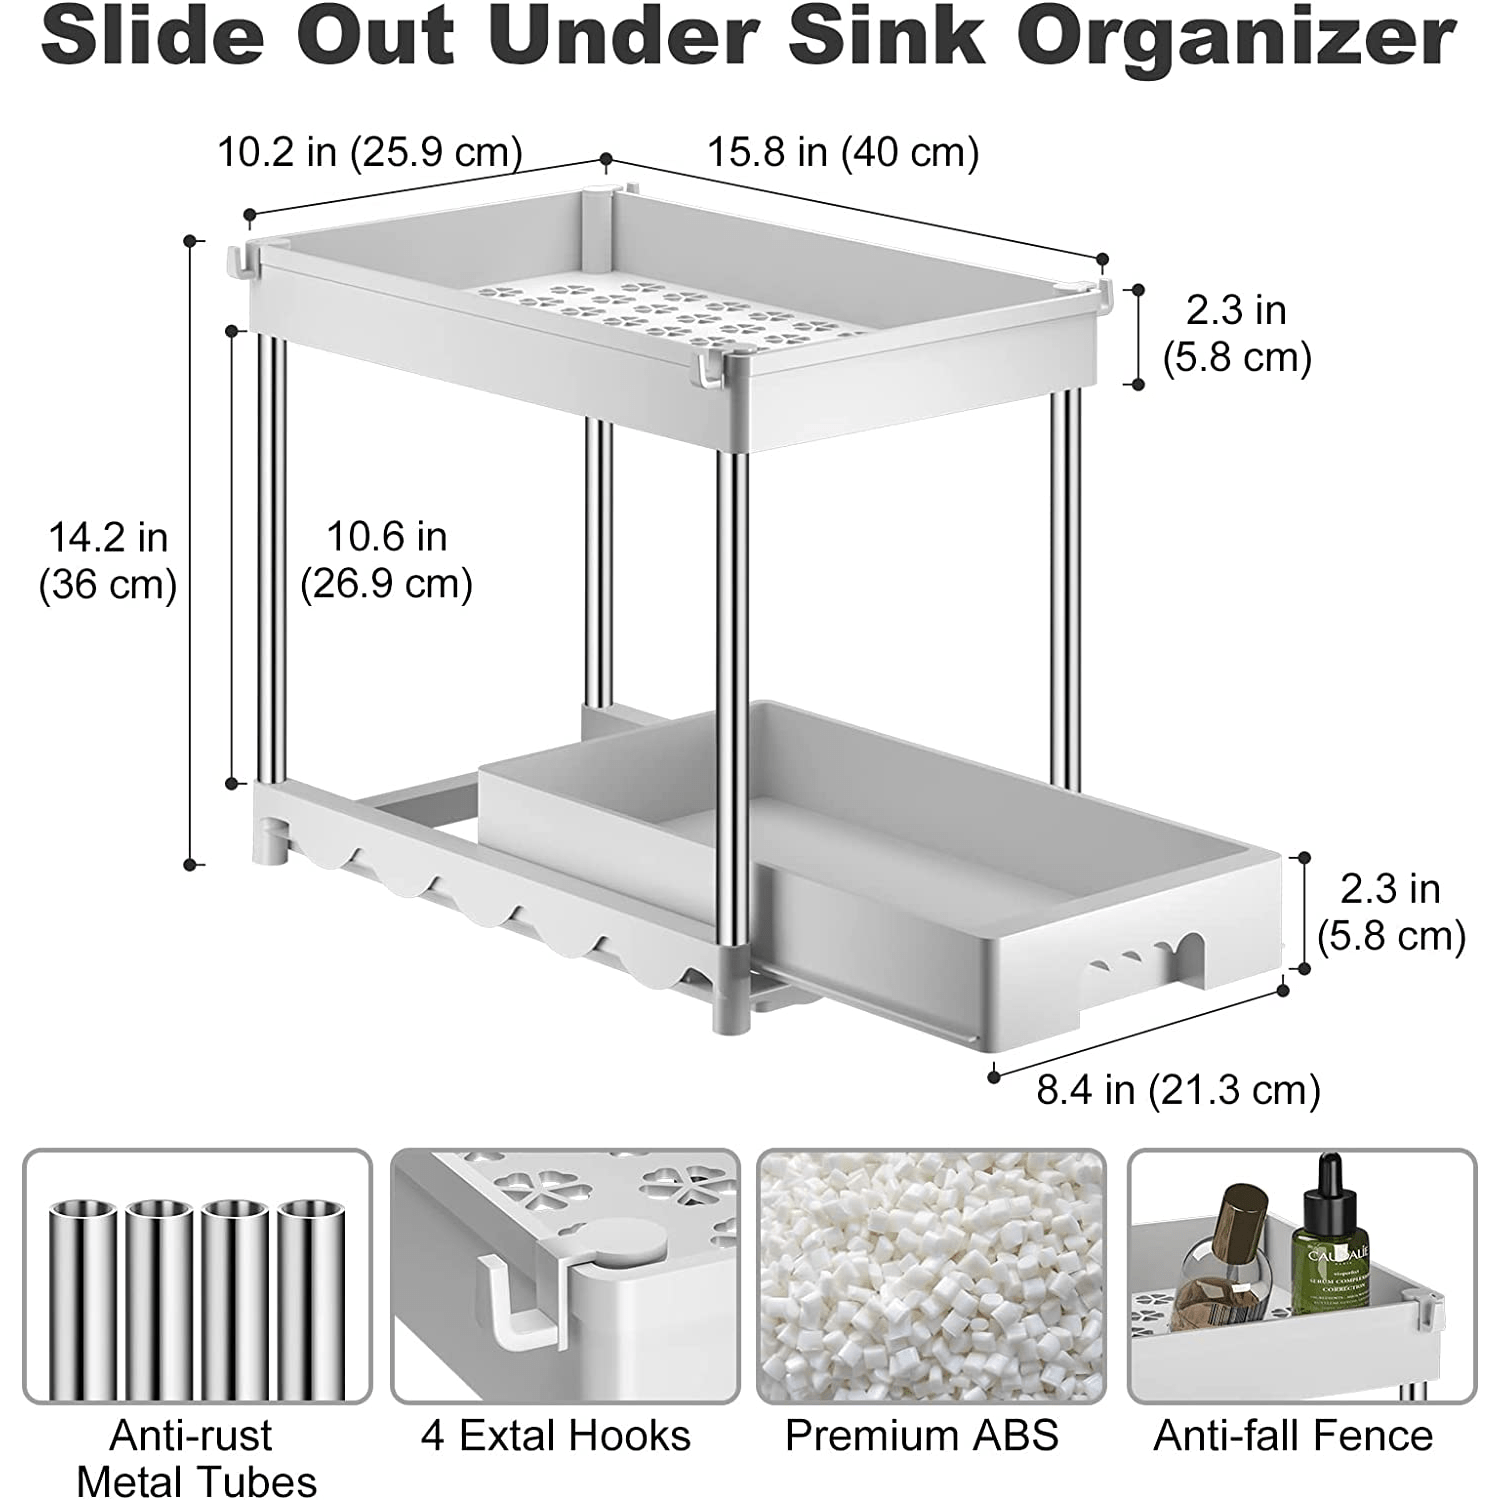 2 Tier White Bathroom Sink Organizer Pull-Out Sliding Storage Drawer